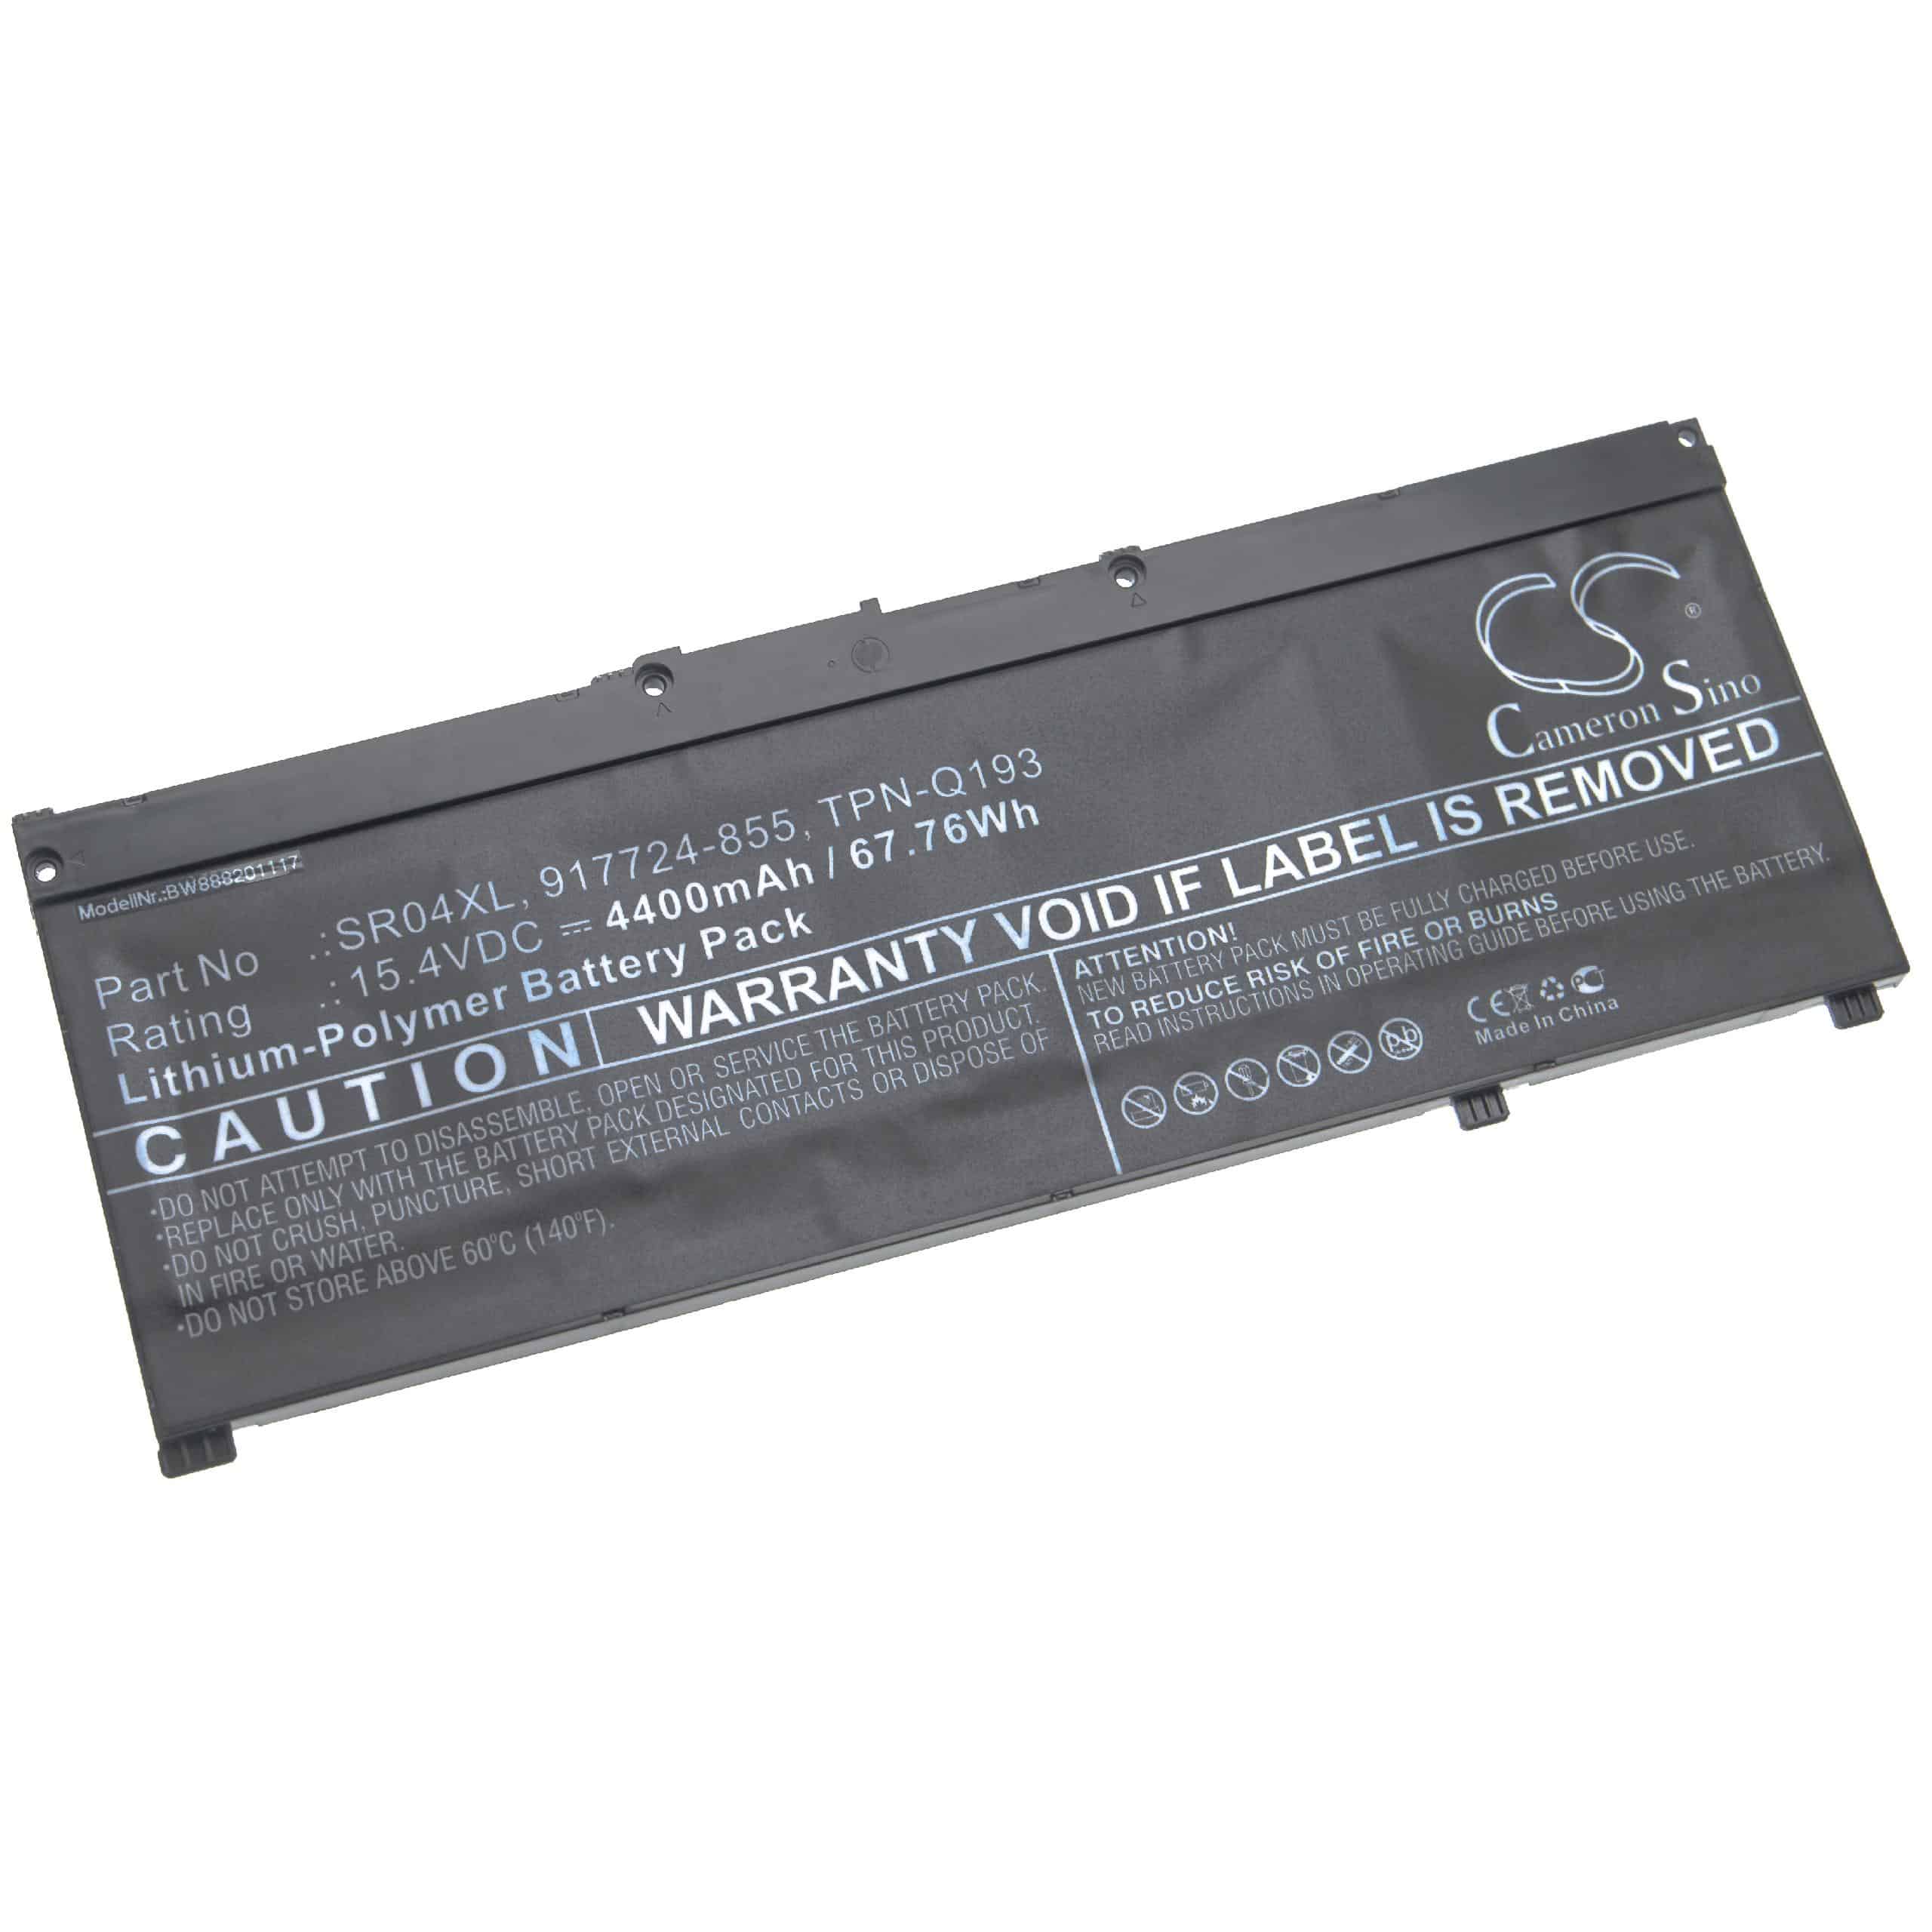 Batterie remplace HP 917678-1B1, 916678-171 pour ordinateur portable - 4400mAh 15,4V Li-polymère, noir